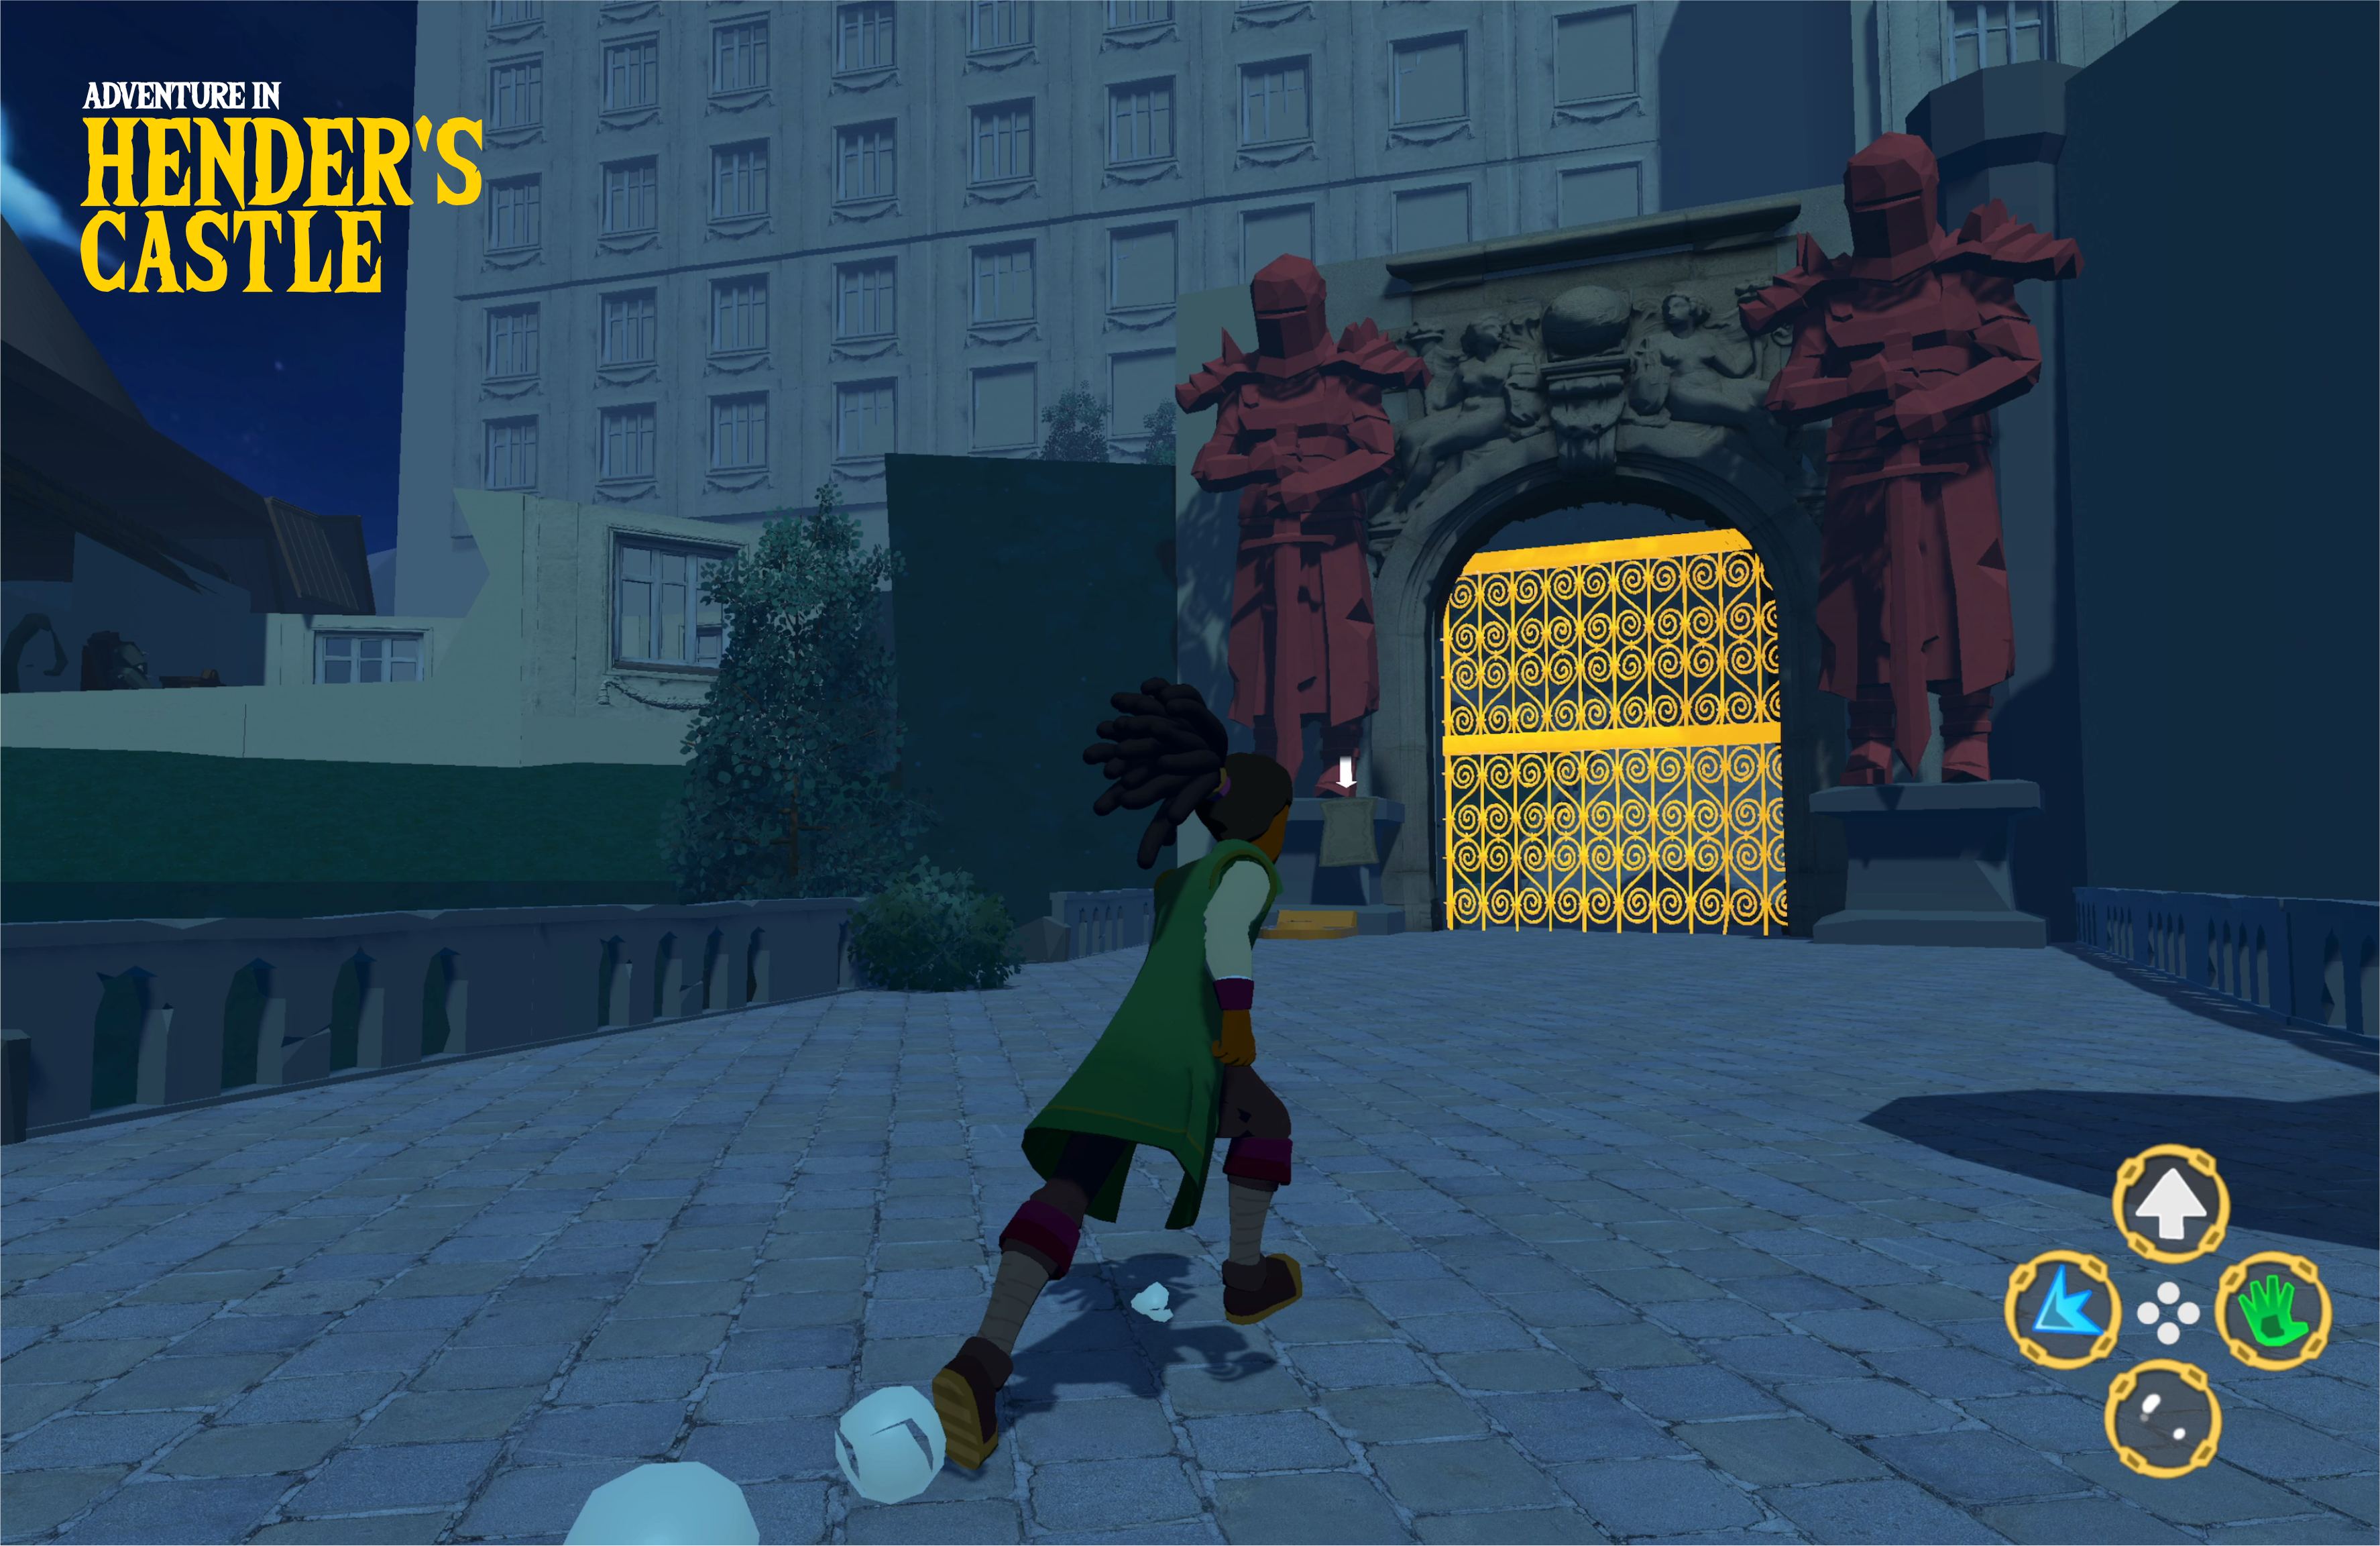 gameplay screenshot of adventure in henders castle